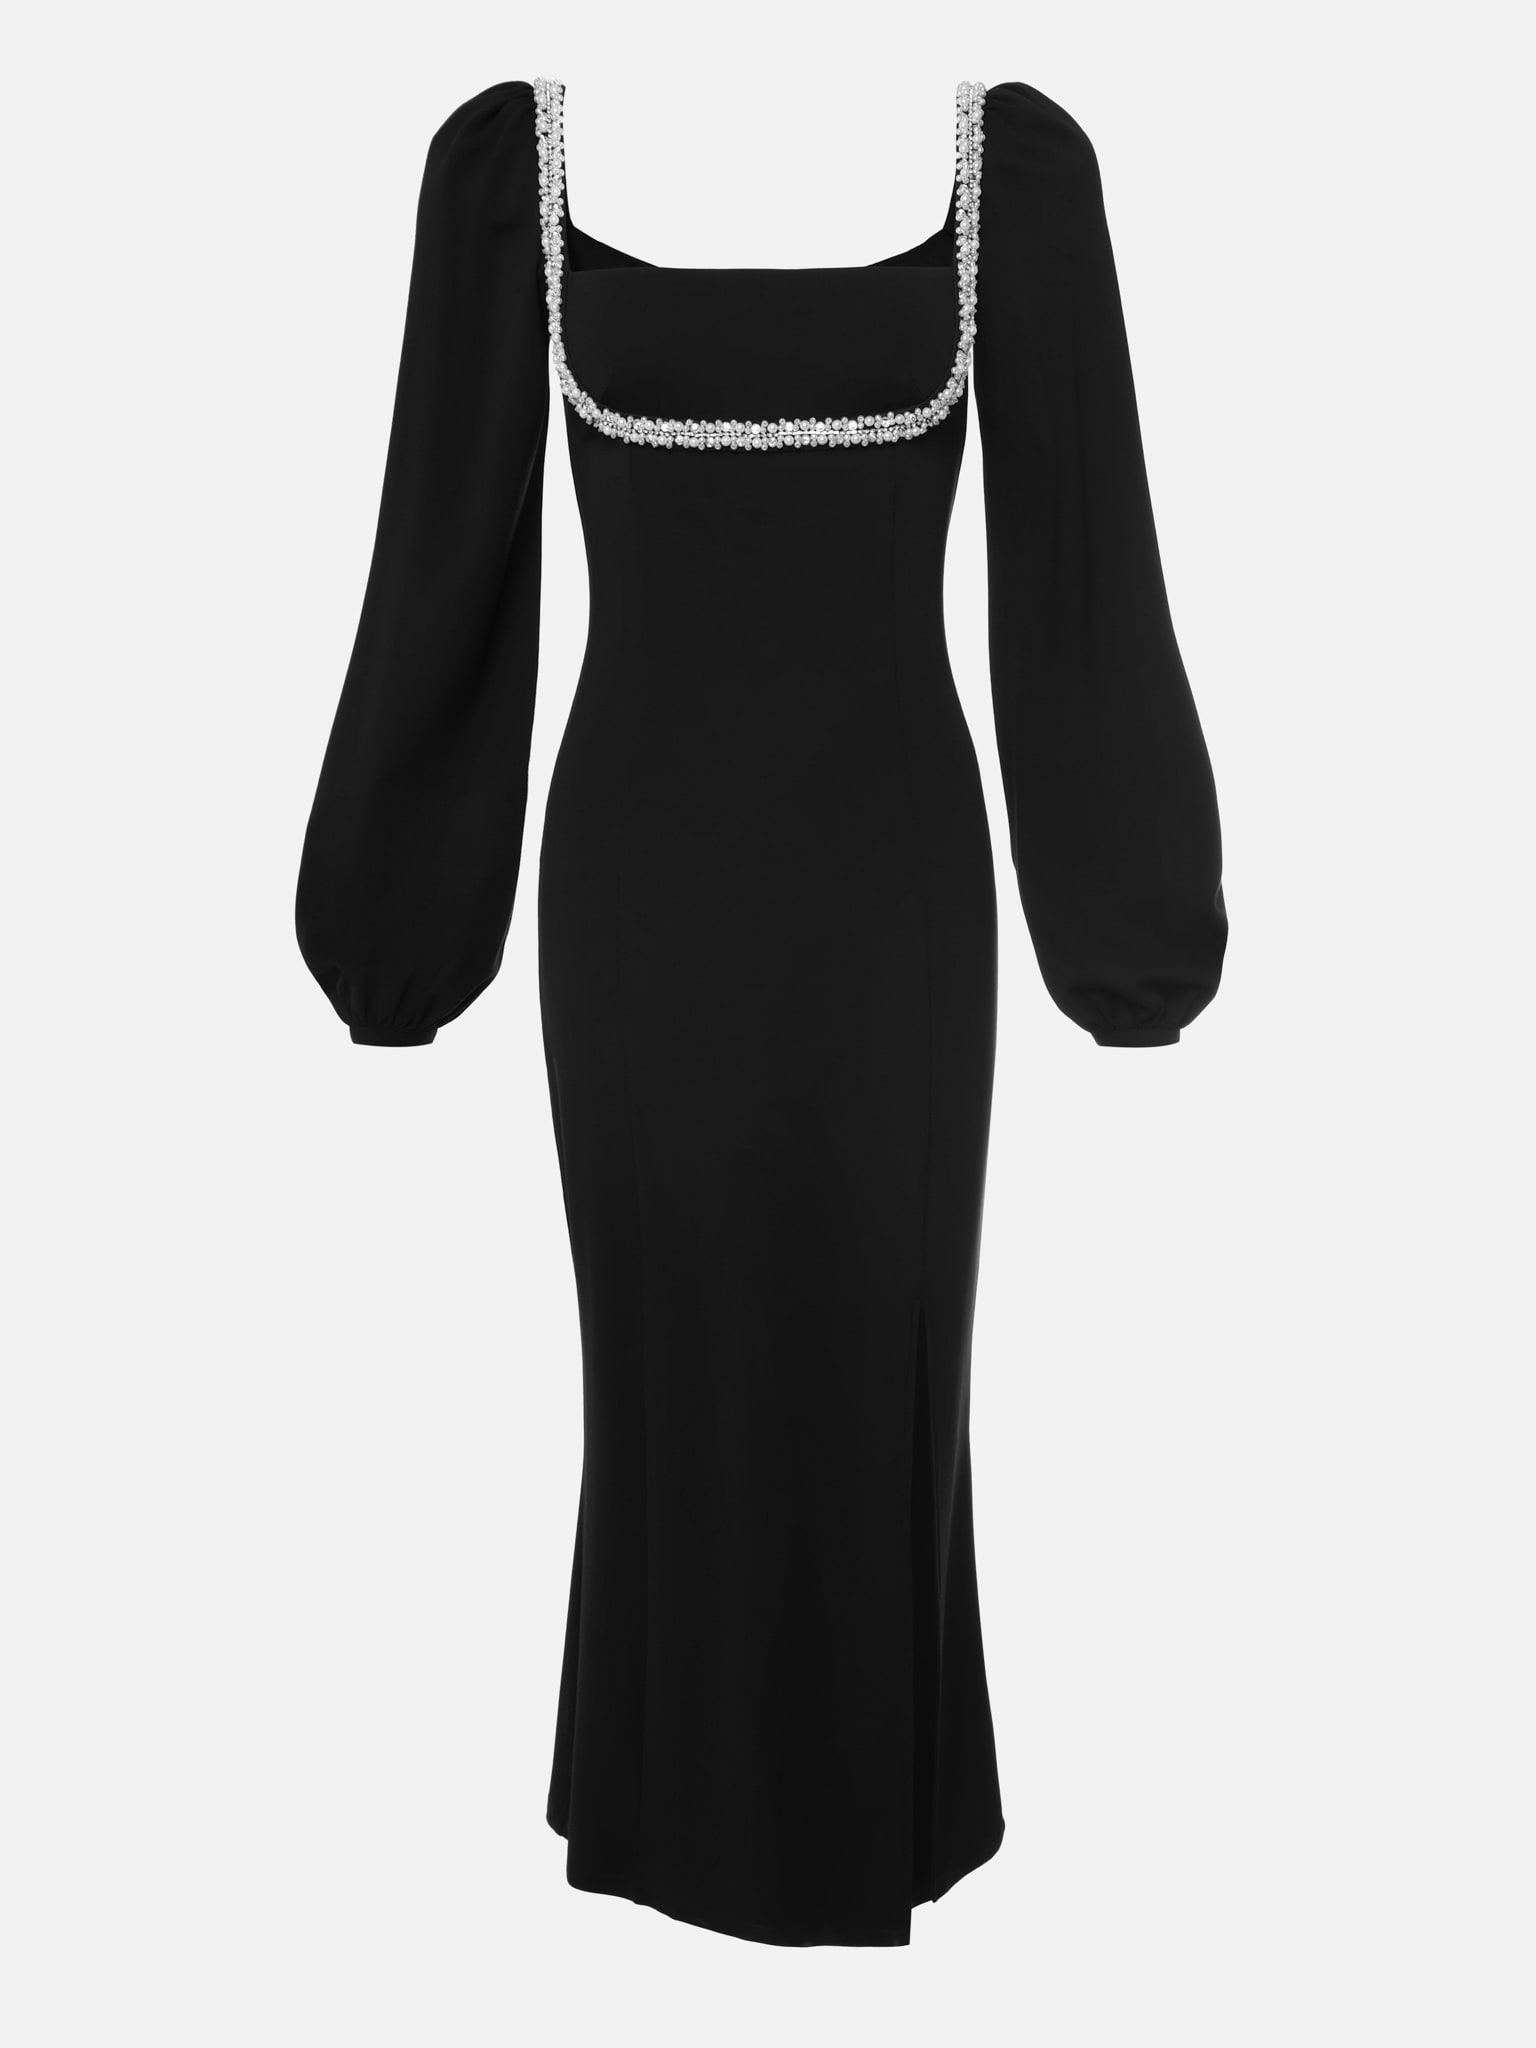 Midi dress with pearl decor on the bodice :: LICHI - Online fashion store